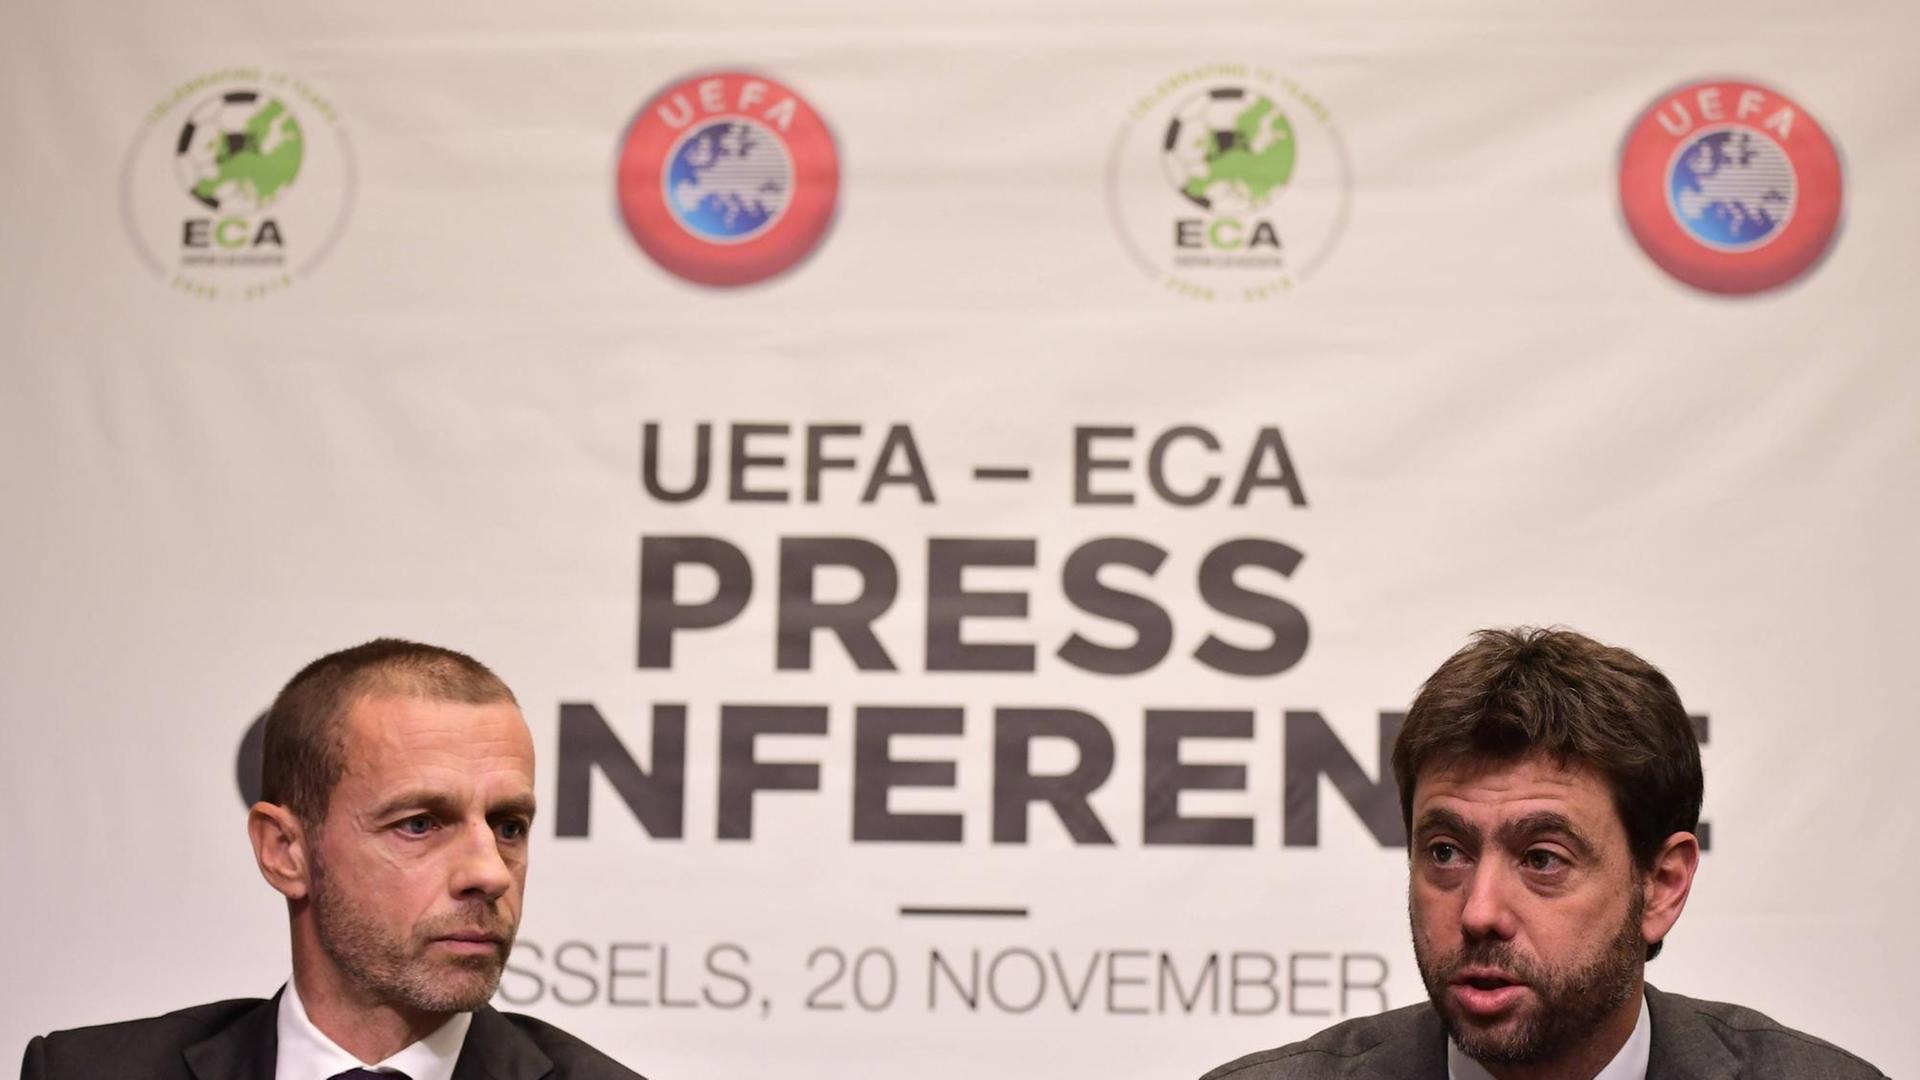 UEFA-Präsident Aleksander Ceferin und der ECA-Vorsitzende Andrea Agnelli bei einer Pressekonferenz in Brüssel am 20.11.2018